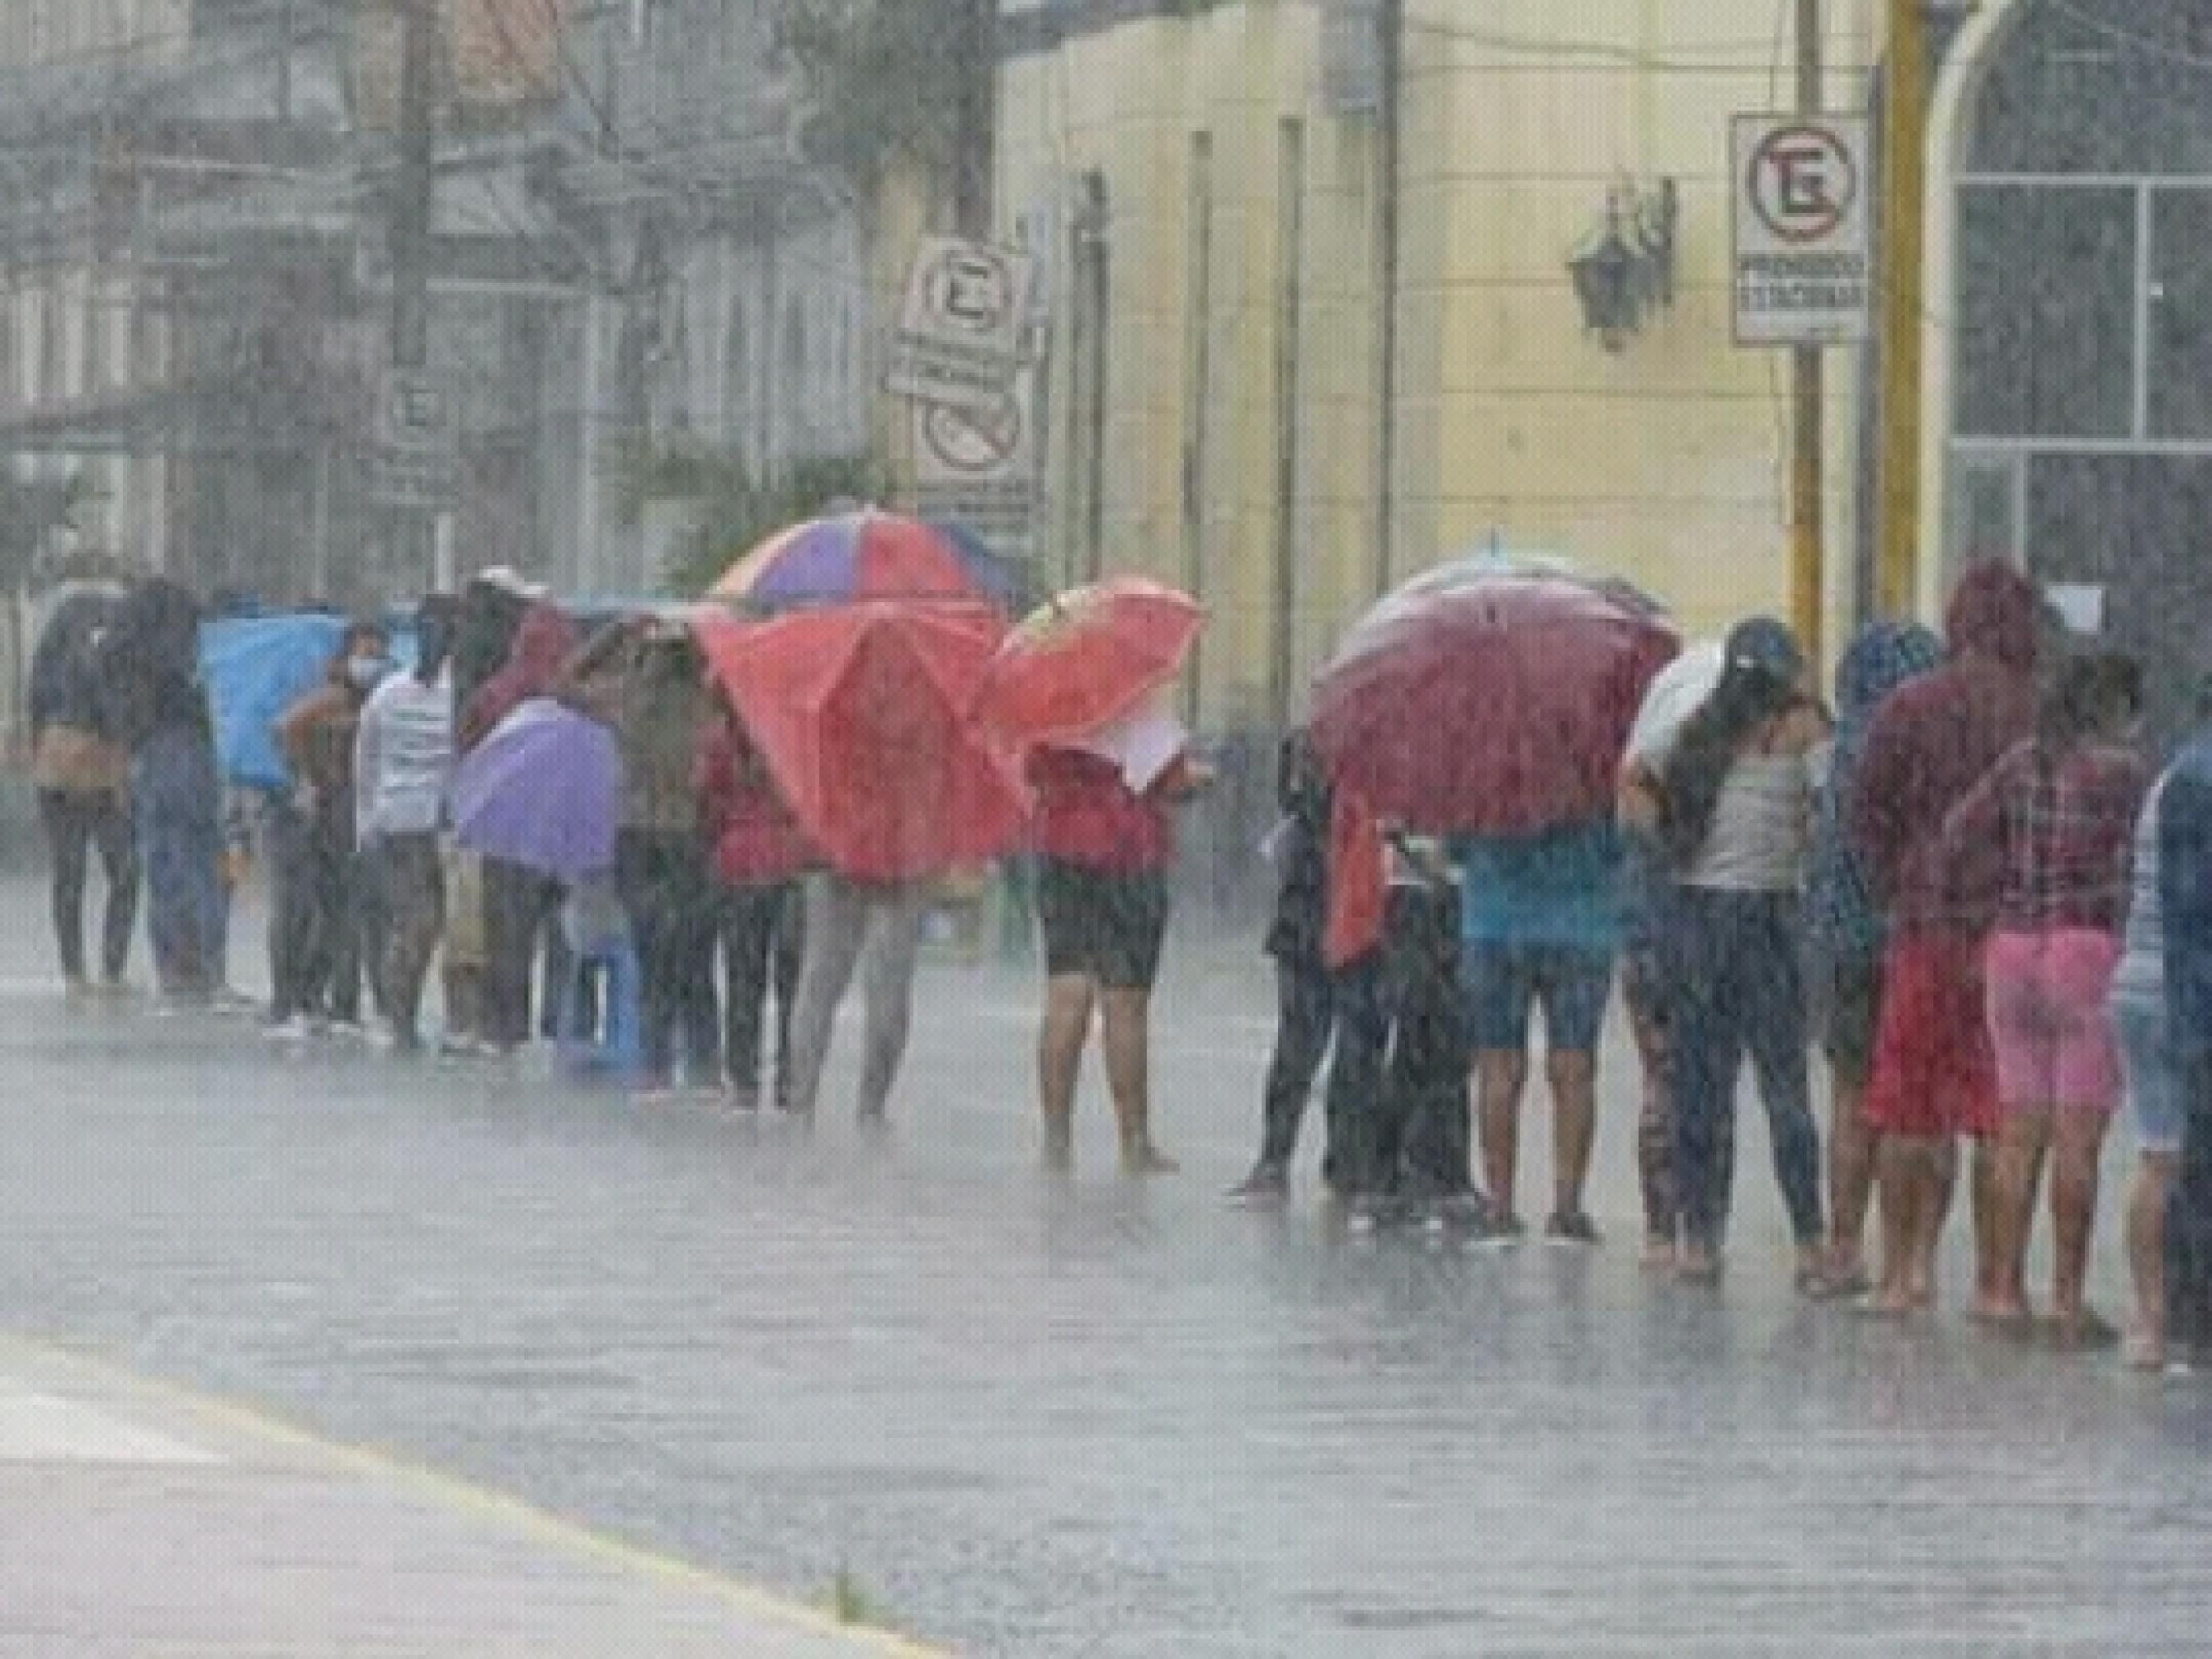 Auf einer Strasse im Regen sieht man eine Schlange von Menschen, viele mit aufgespannten Regenschirmen